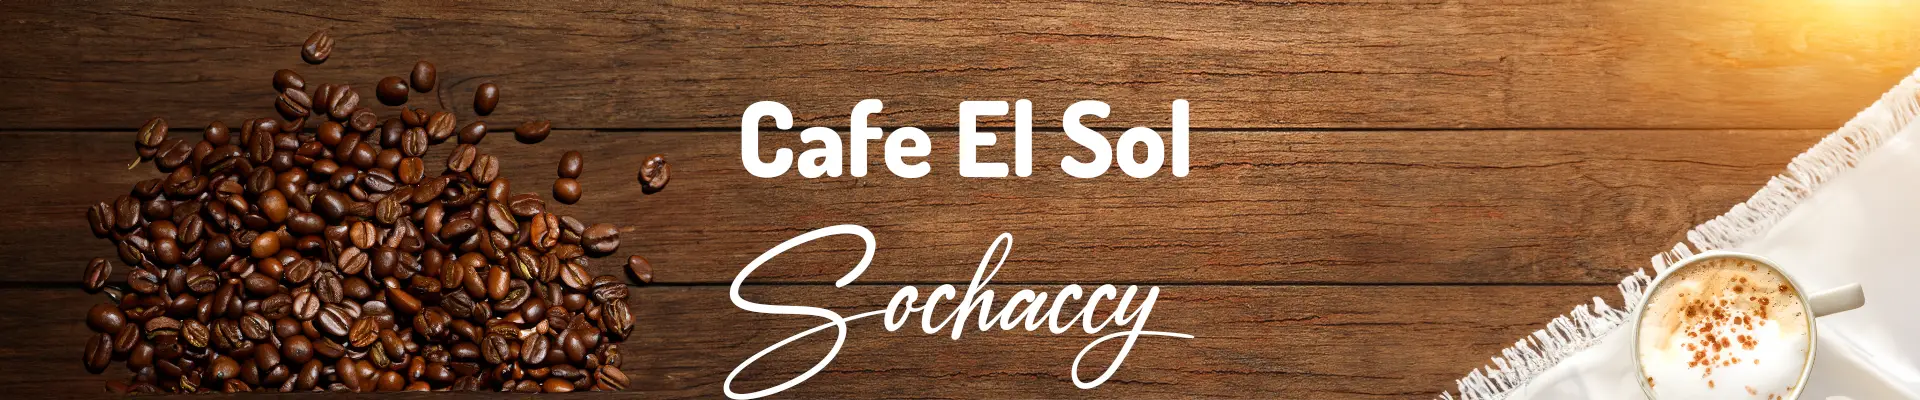 Kawa Sochaccy Cafe el Sol